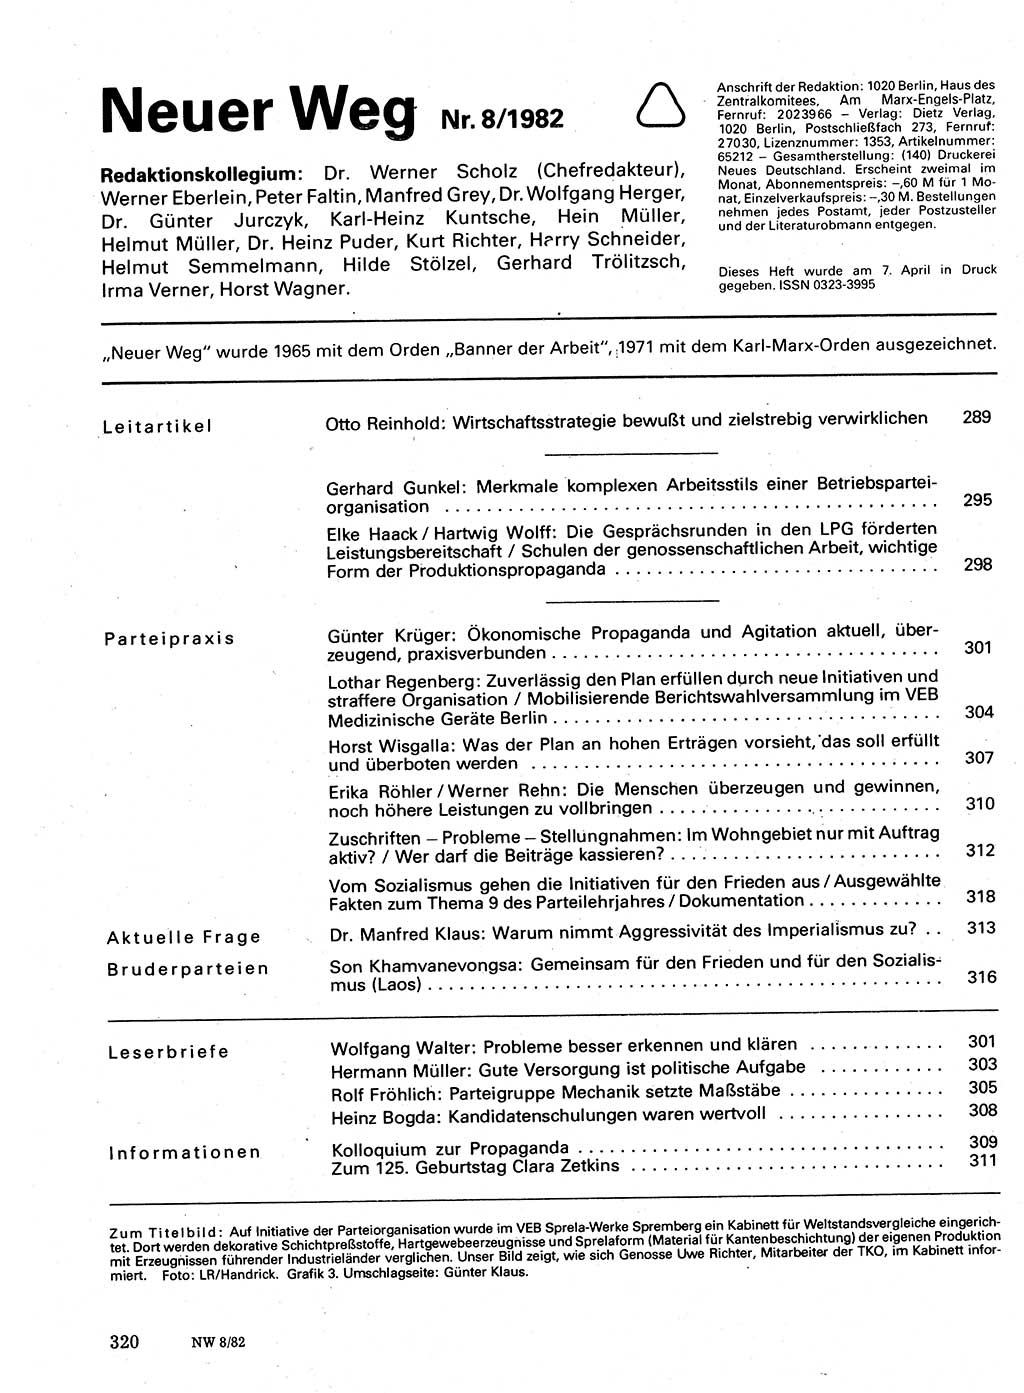 Neuer Weg (NW), Organ des Zentralkomitees (ZK) der SED (Sozialistische Einheitspartei Deutschlands) für Fragen des Parteilebens, 37. Jahrgang [Deutsche Demokratische Republik (DDR)] 1982, Seite 320 (NW ZK SED DDR 1982, S. 320)